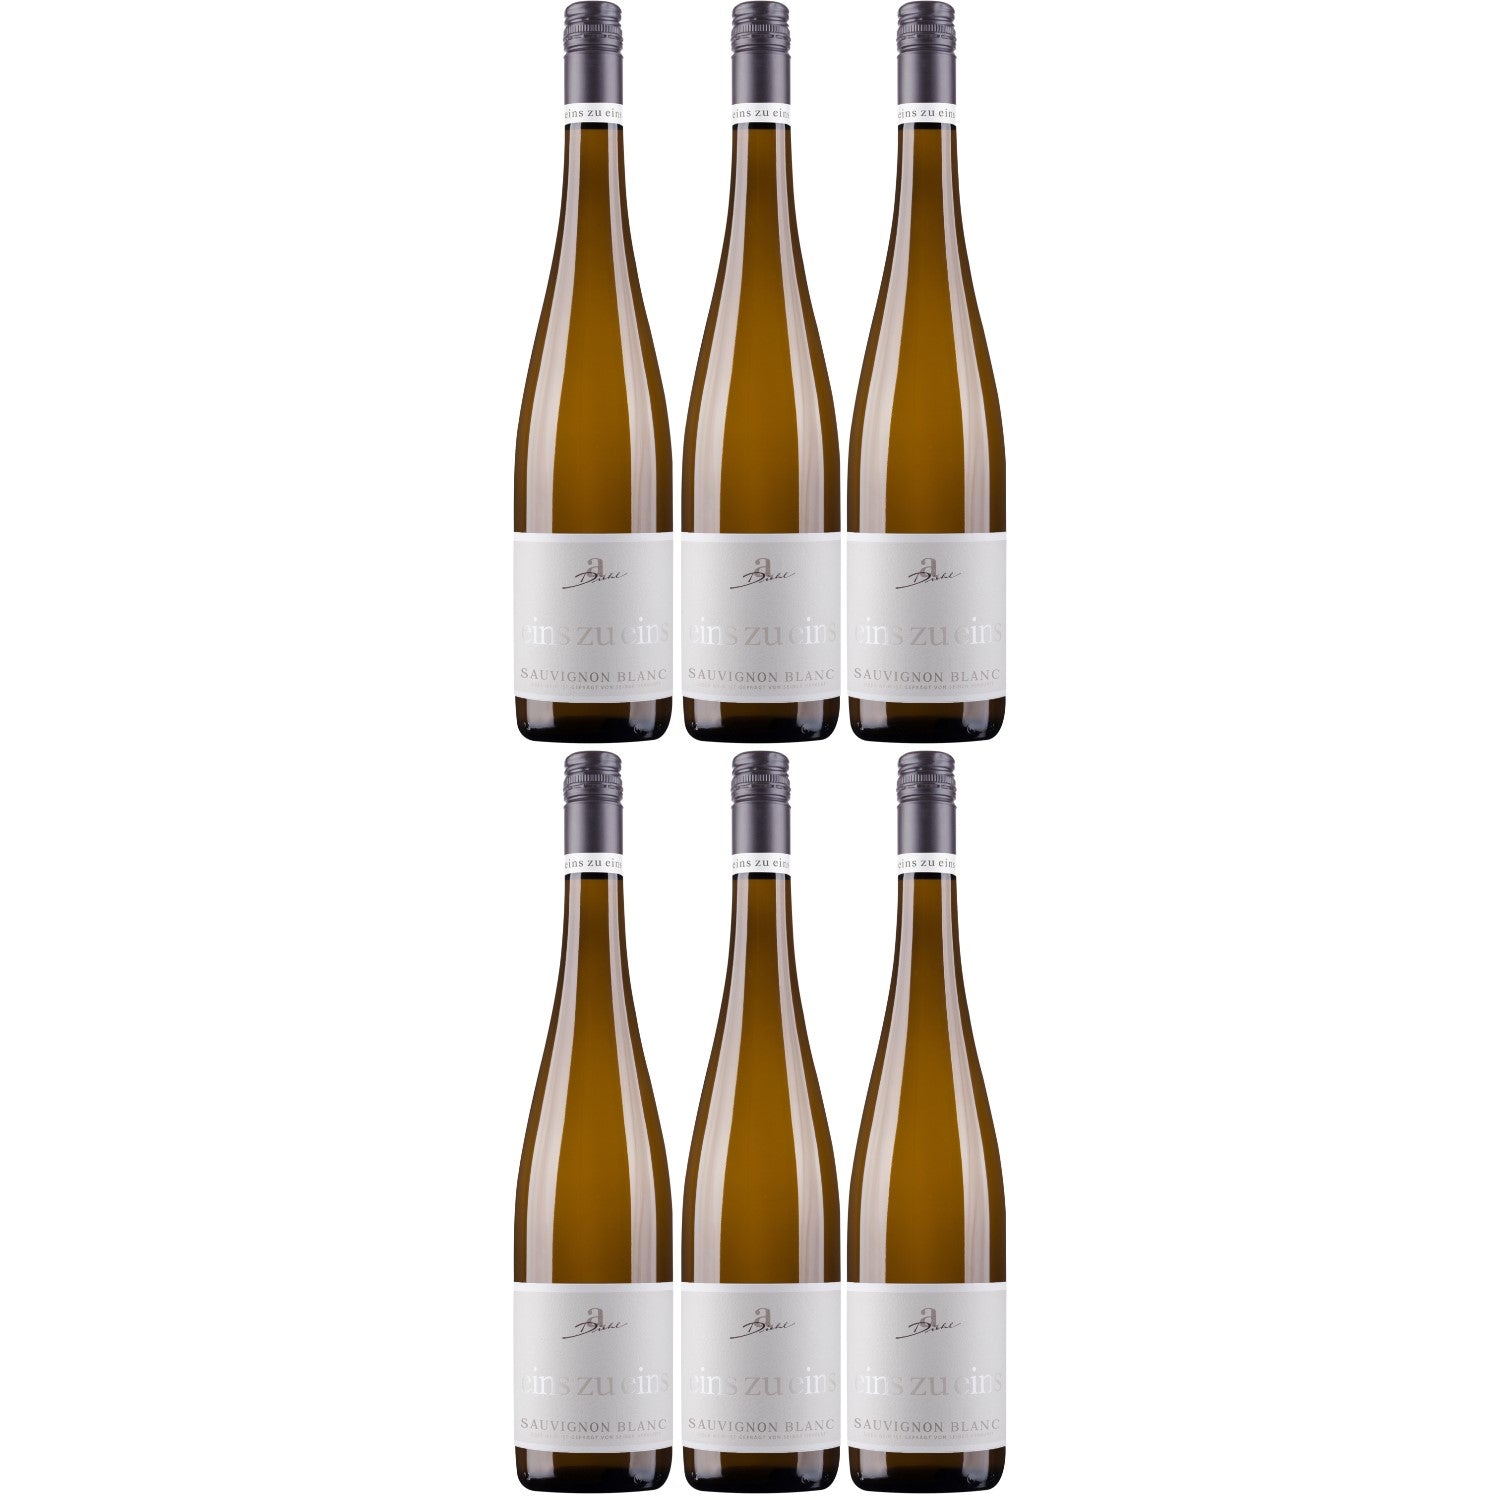 A. Diehl Sauvignon Blanc eins zu eins Wein trocken QbA Deutschland (6 x 0.75l) - Versanel -